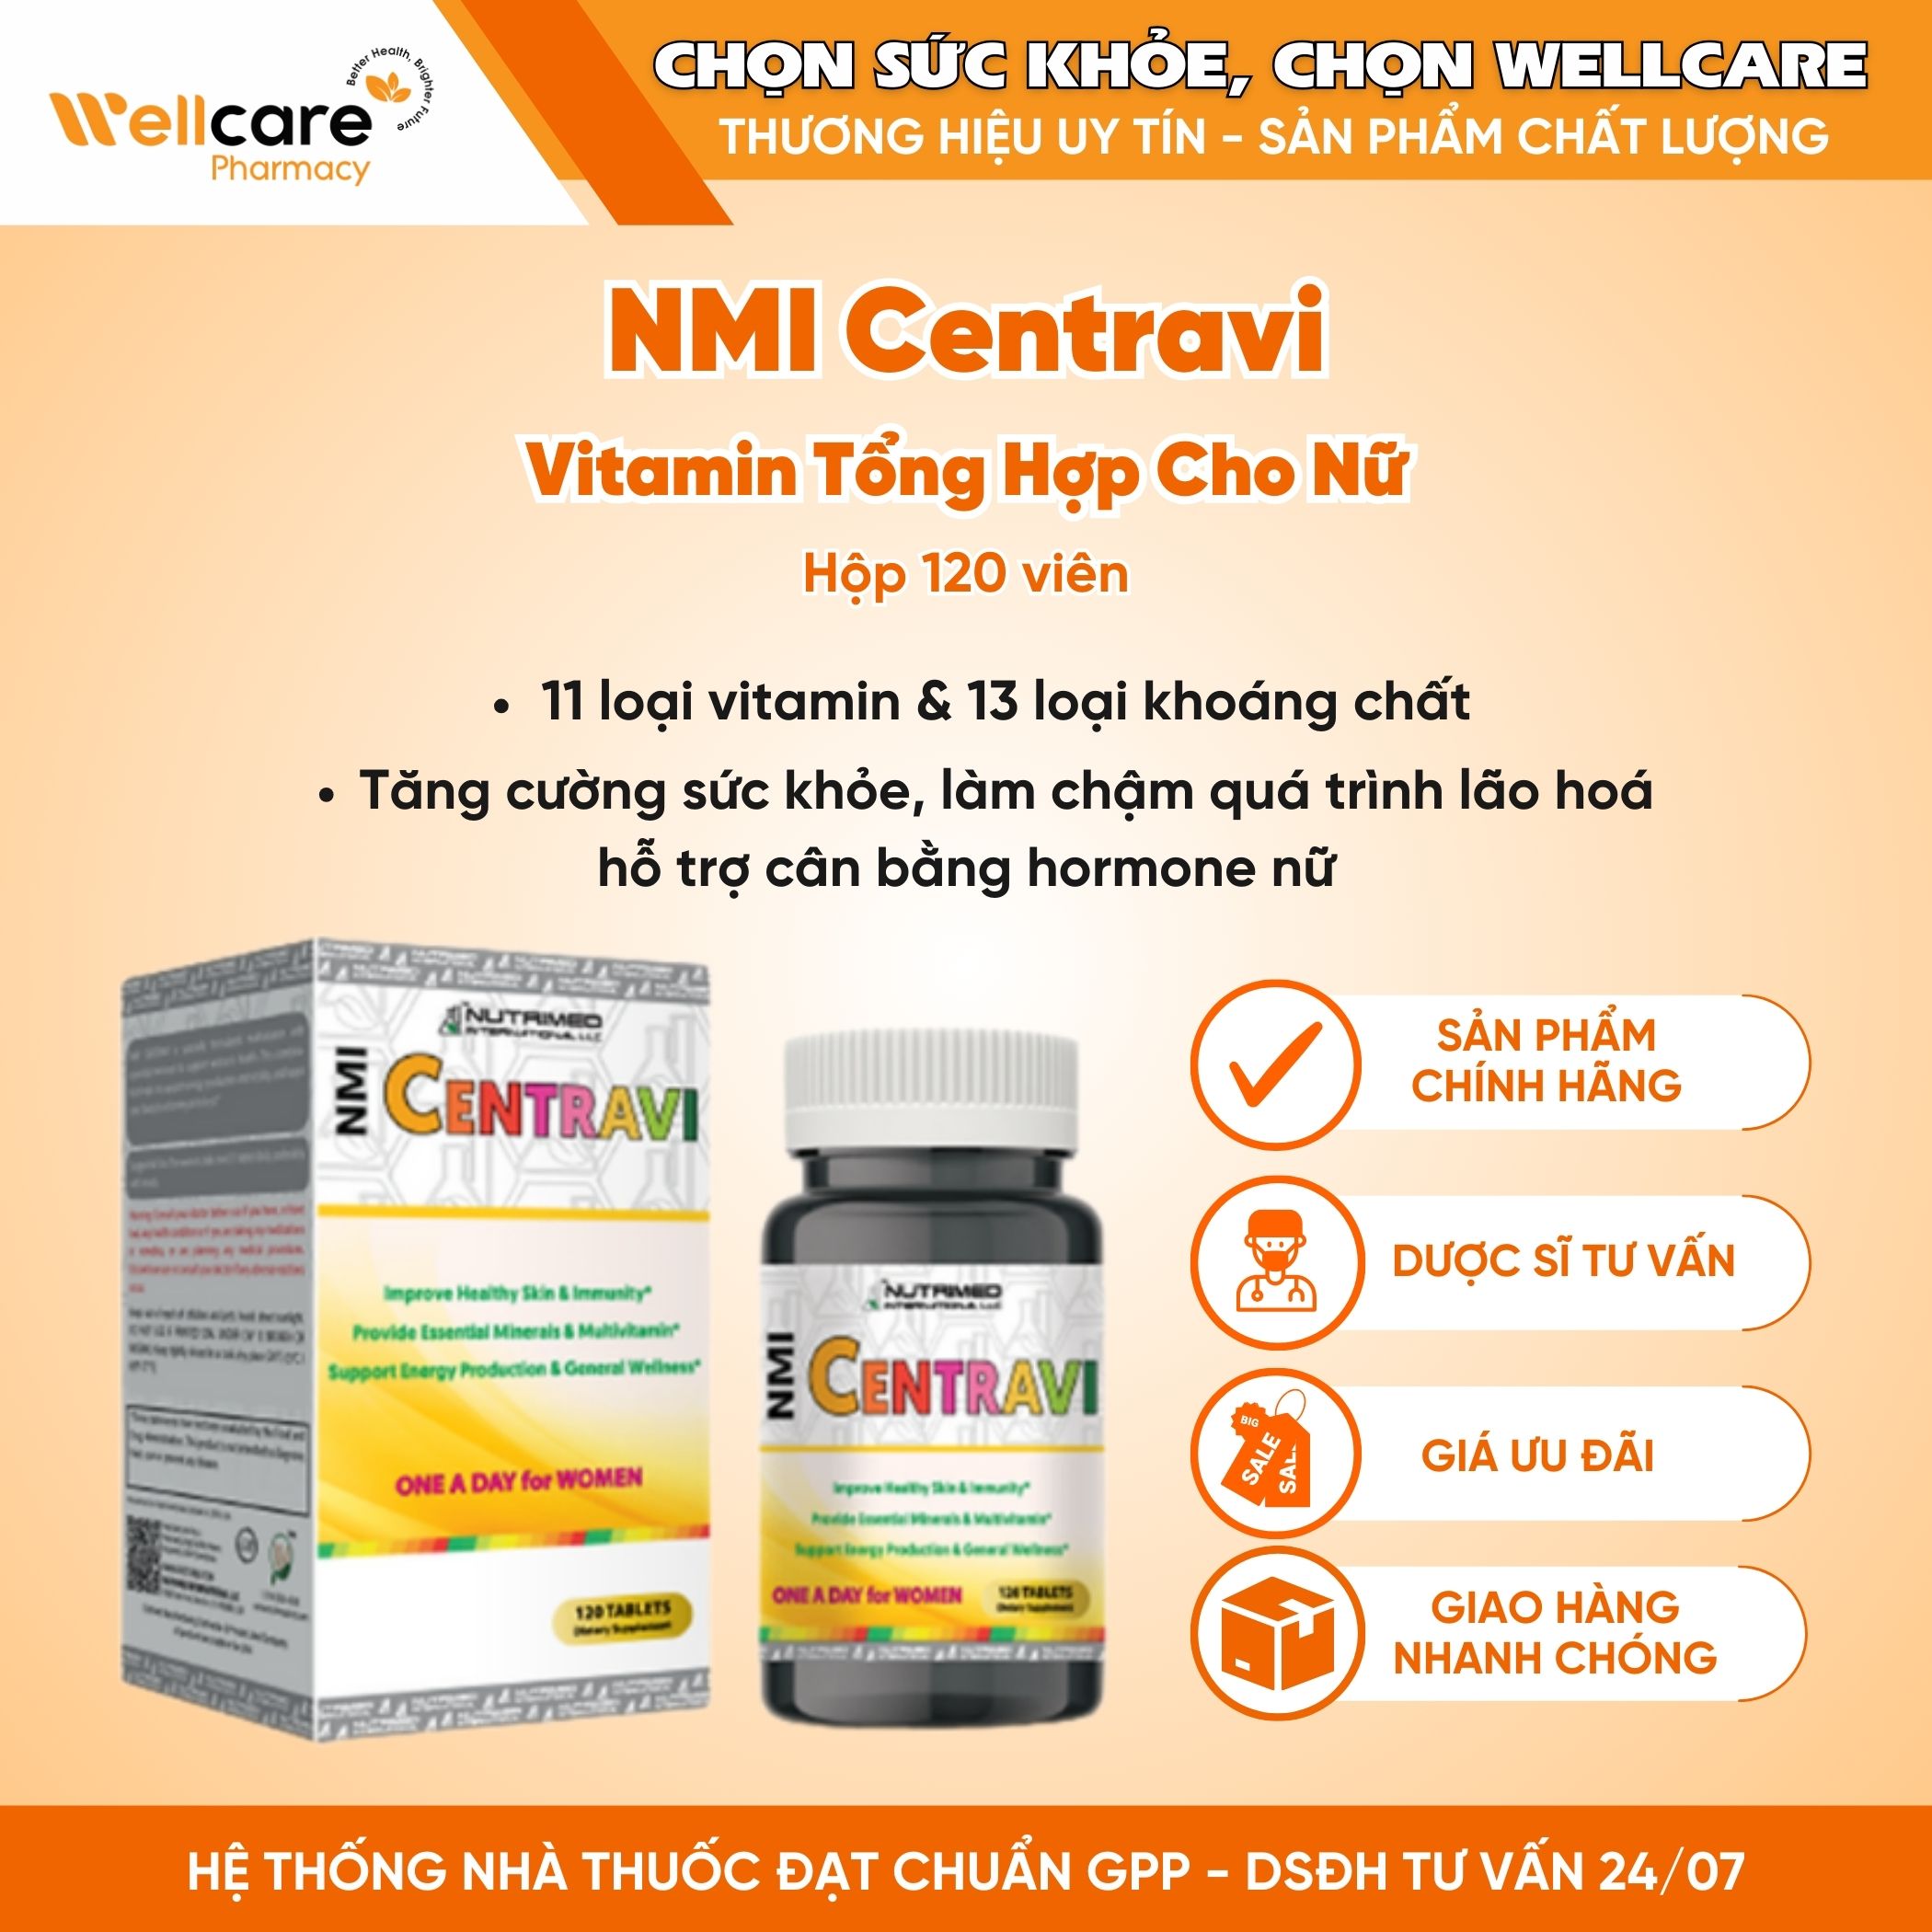 NMI Centravi – Viên uống bổ sung vitamin và khoáng chất cho cơ thể, giúp tăng cường sức khỏe cho nữ giới (Hộp 120 viên)